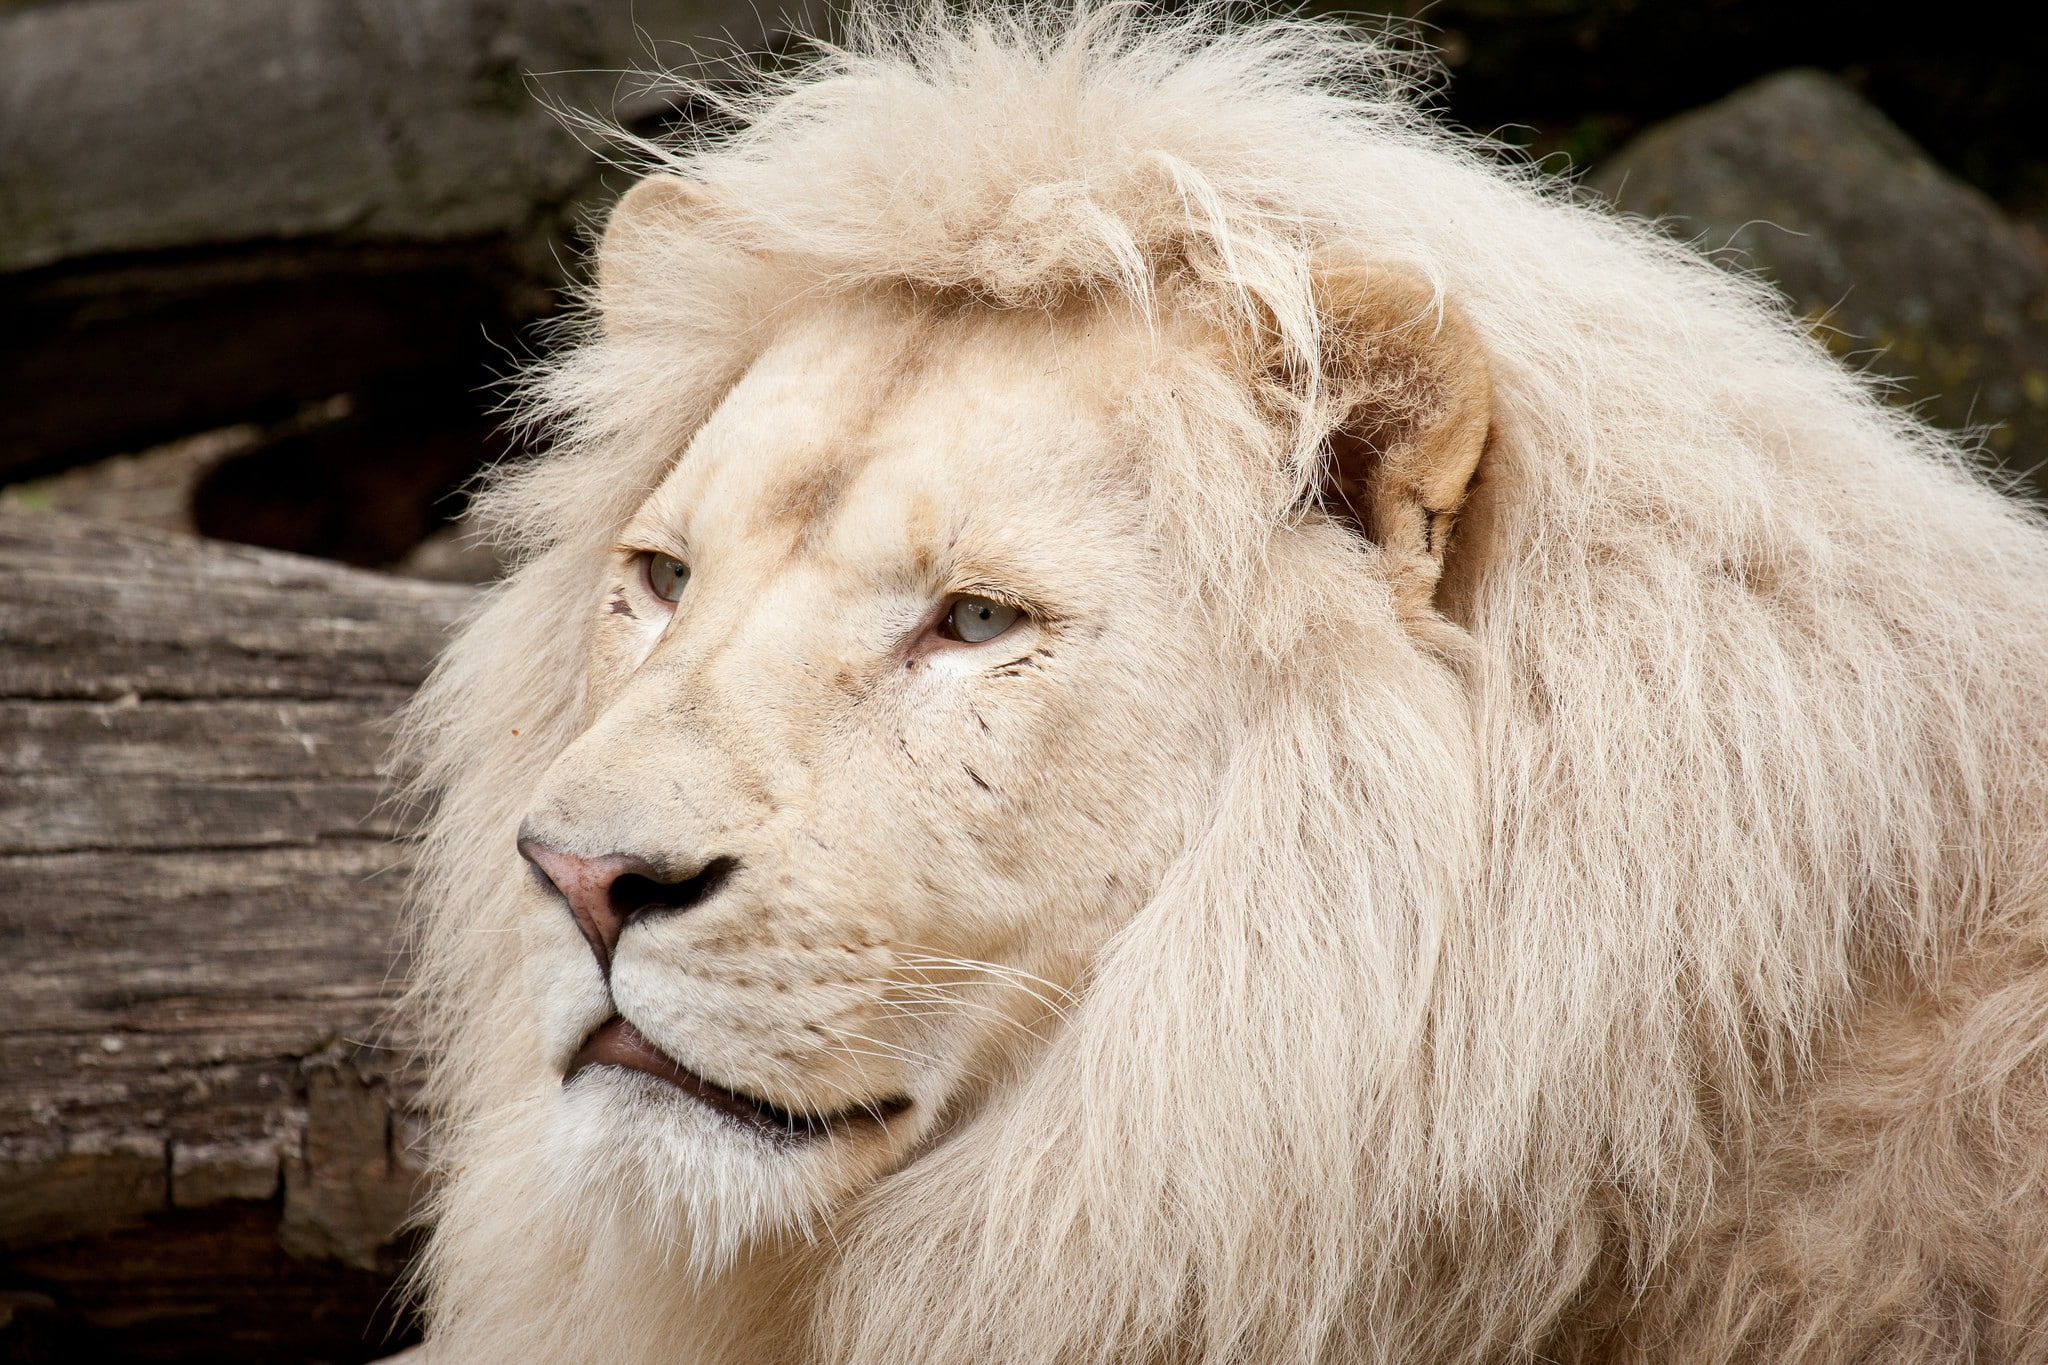 Mane wild lion, white lion, Cat, muzzle